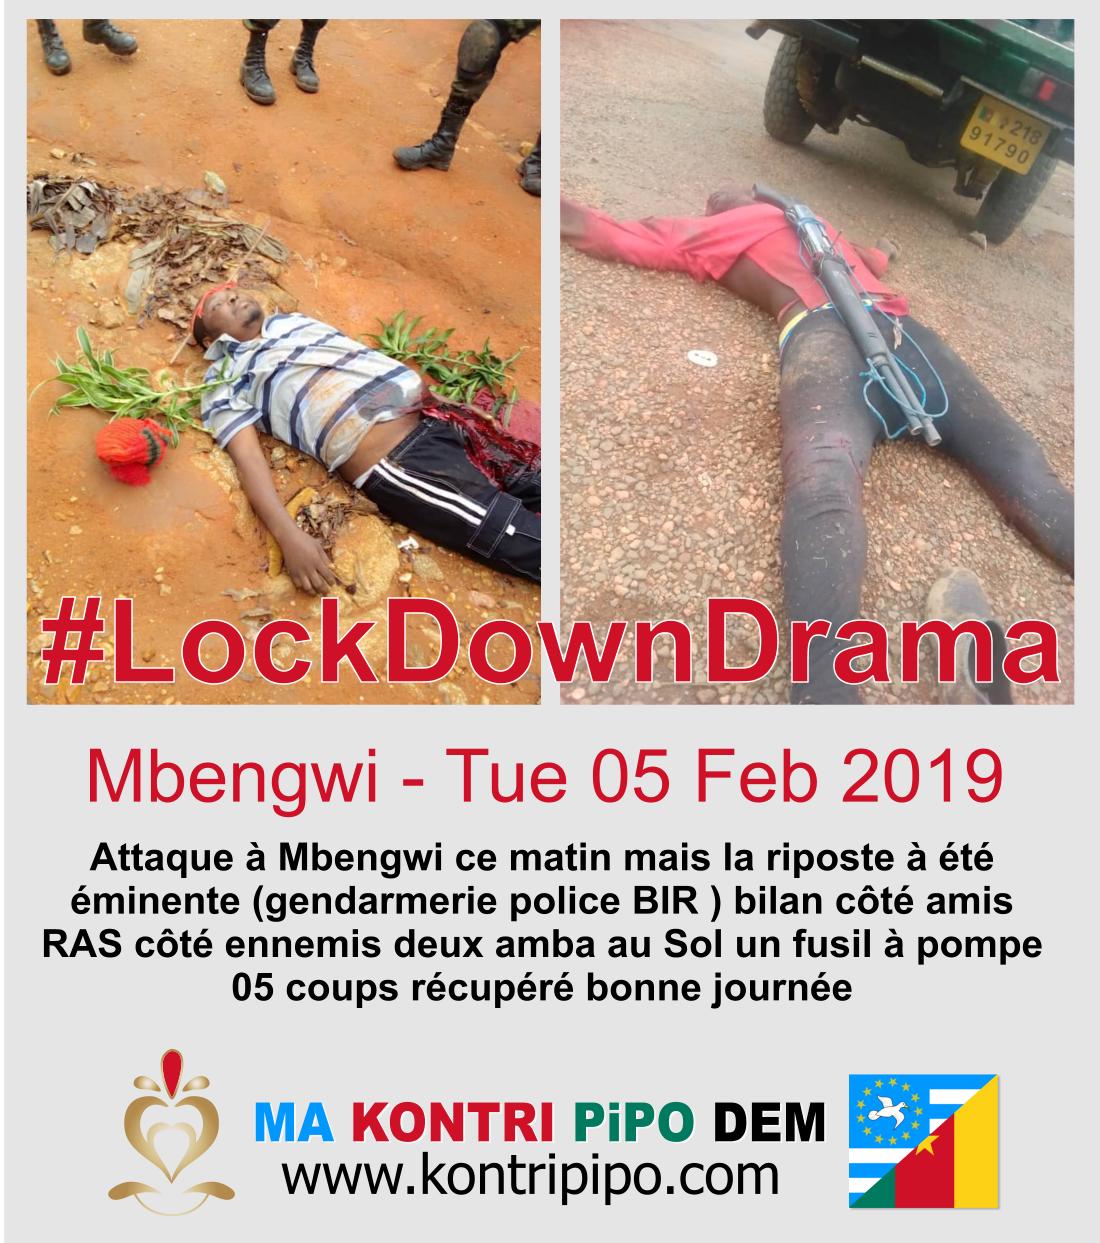 Mbengwi Lockdown drama